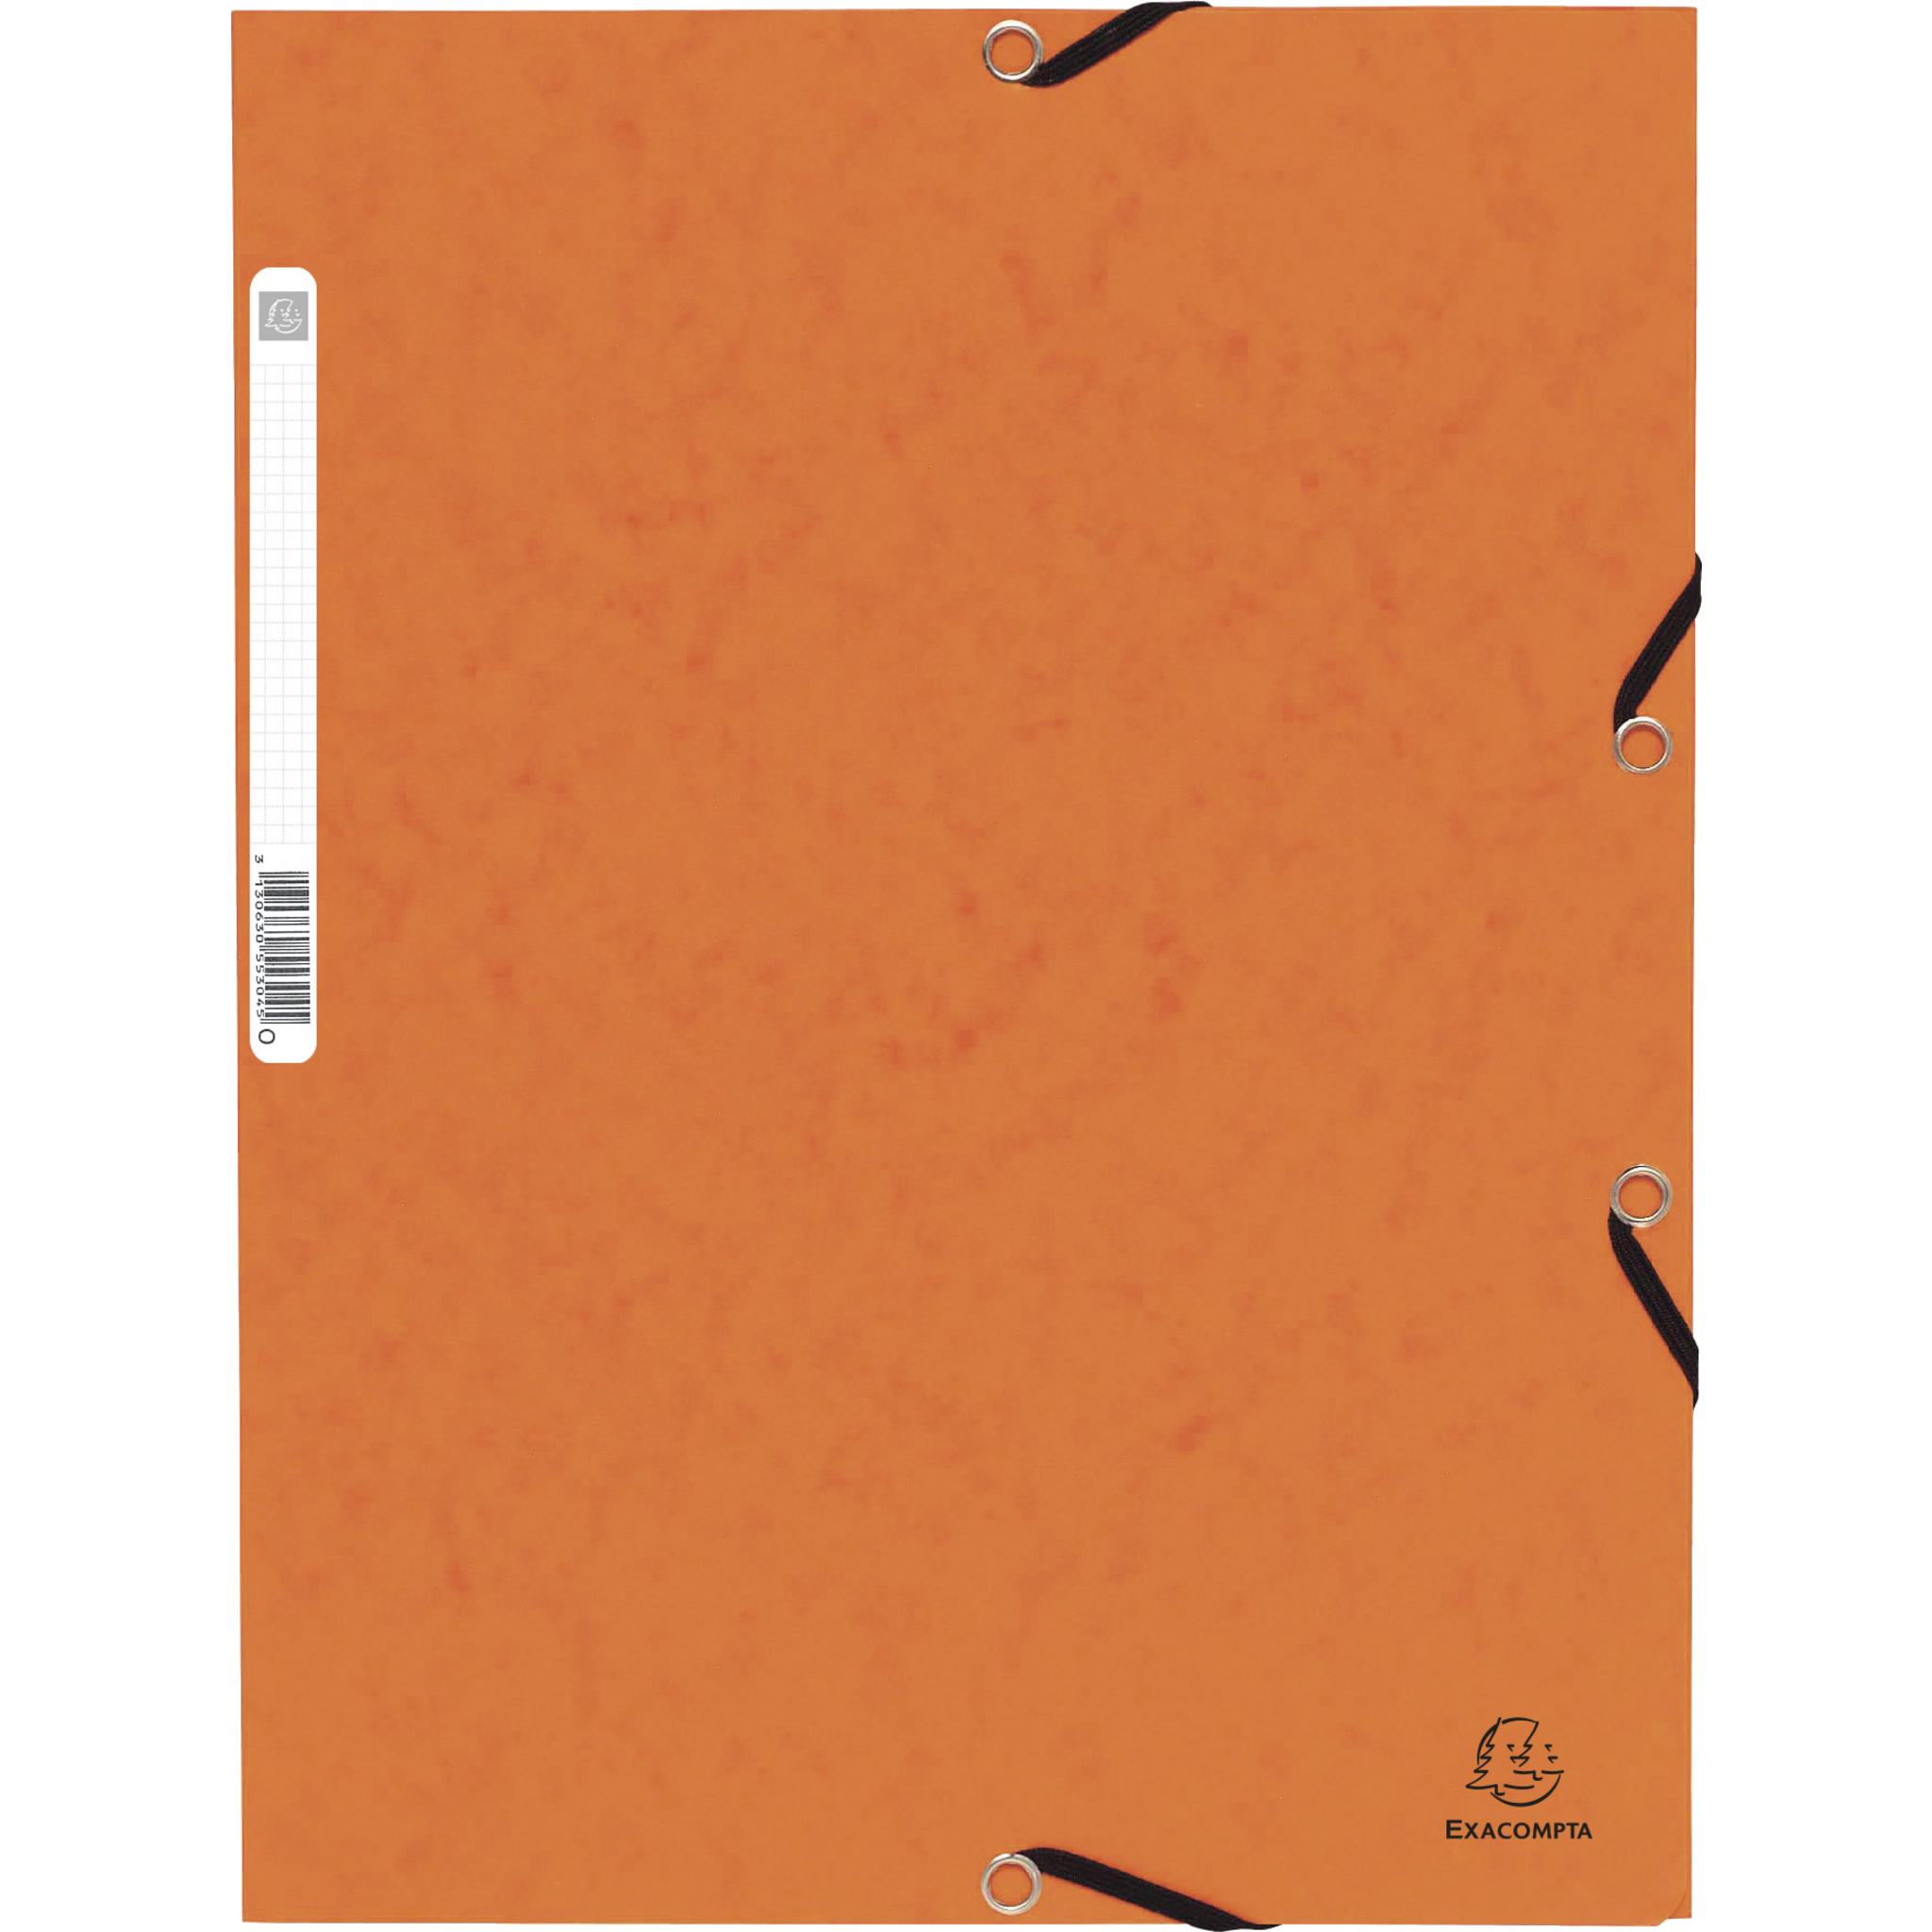 EXACOMPTA Sammelmappe mit Gummizug und 3 Klappen aus Colorspan-Karton 355g/qm, für Format DIN A4 - Orange